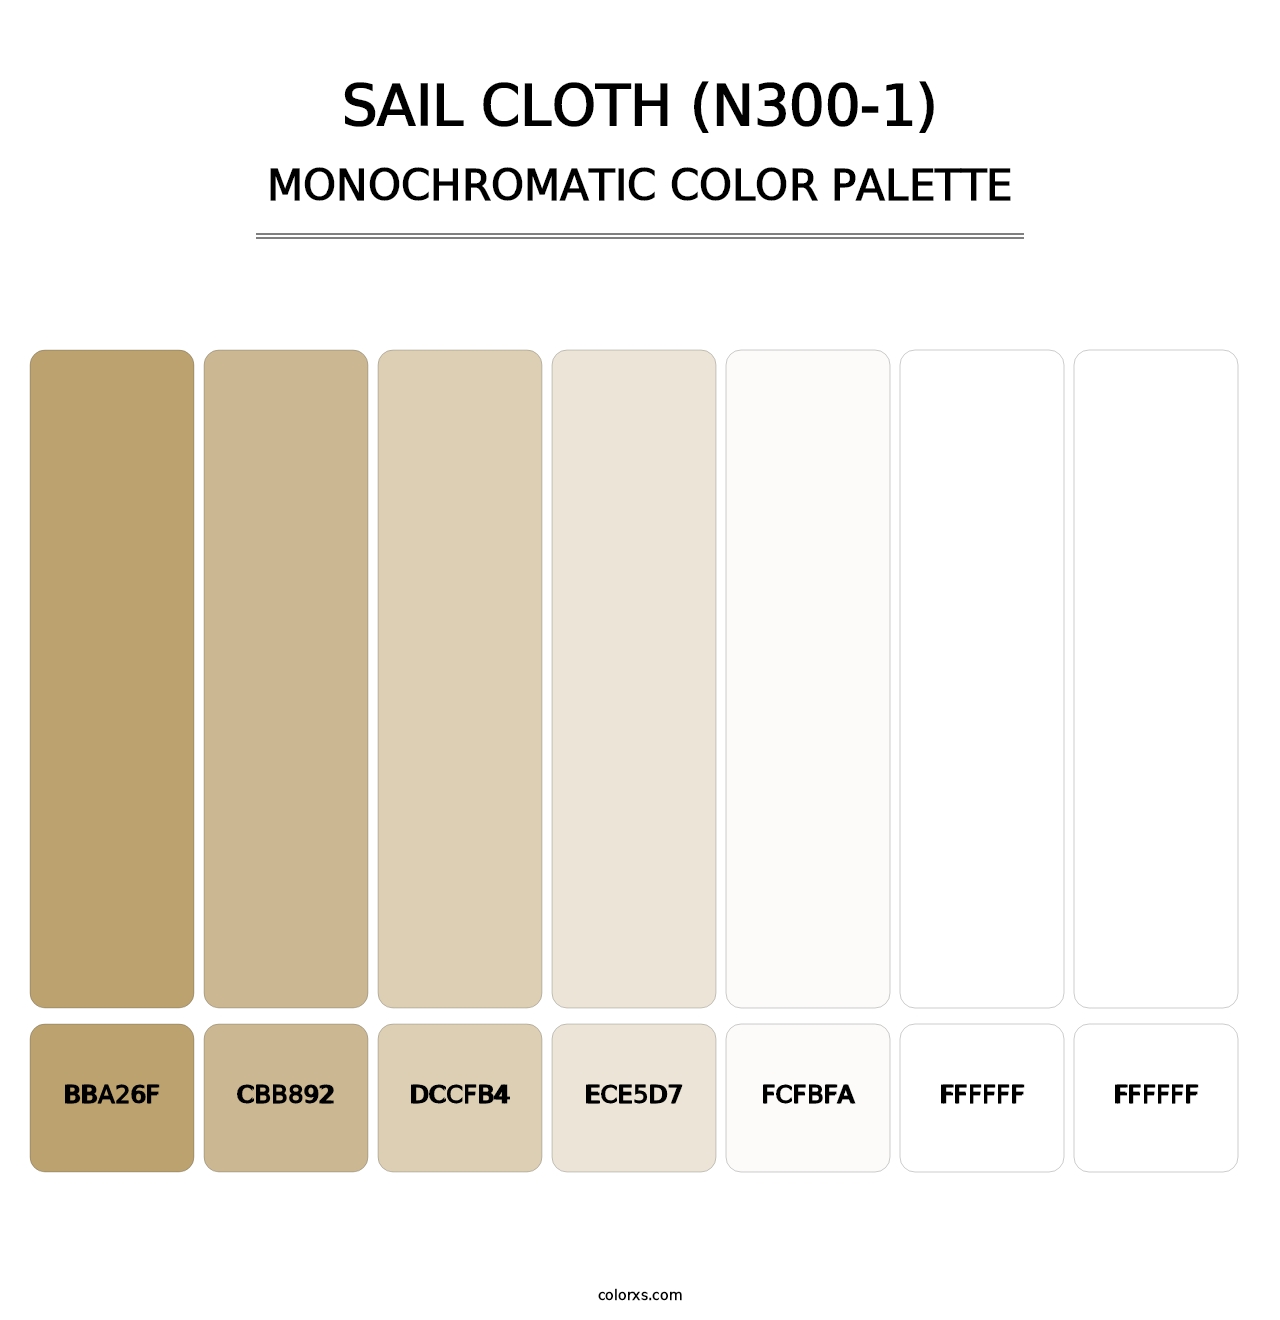 Sail Cloth (N300-1) - Monochromatic Color Palette